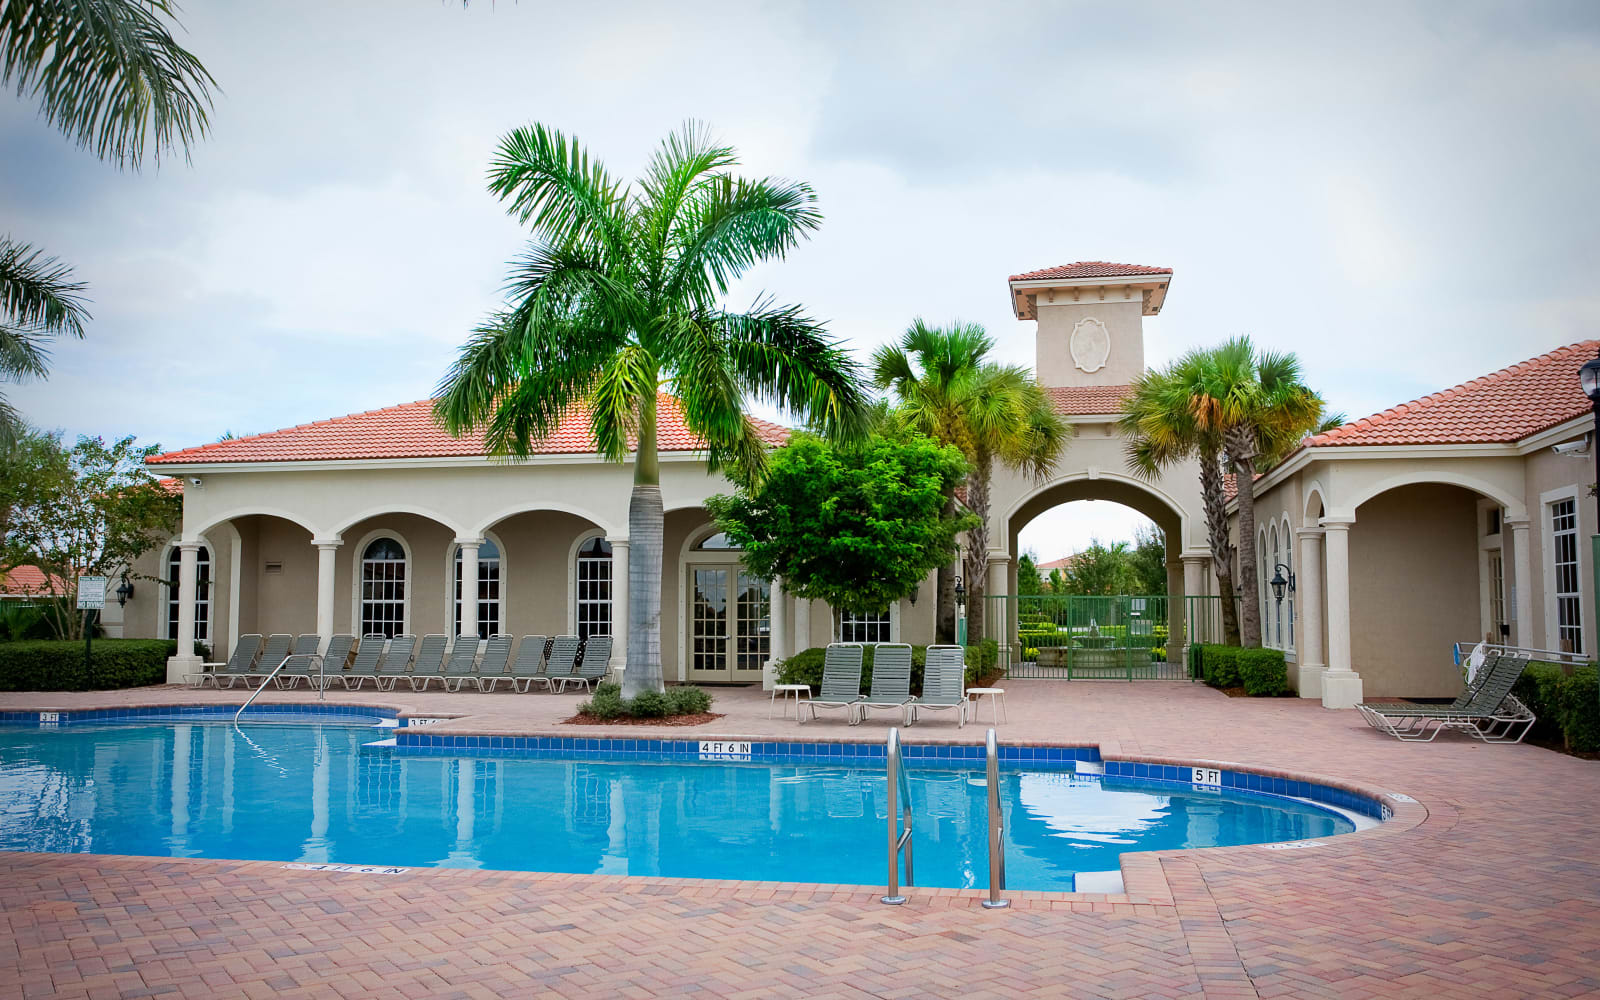 Outdoor pool at Green Cay Village in Boynton Beach, Florida